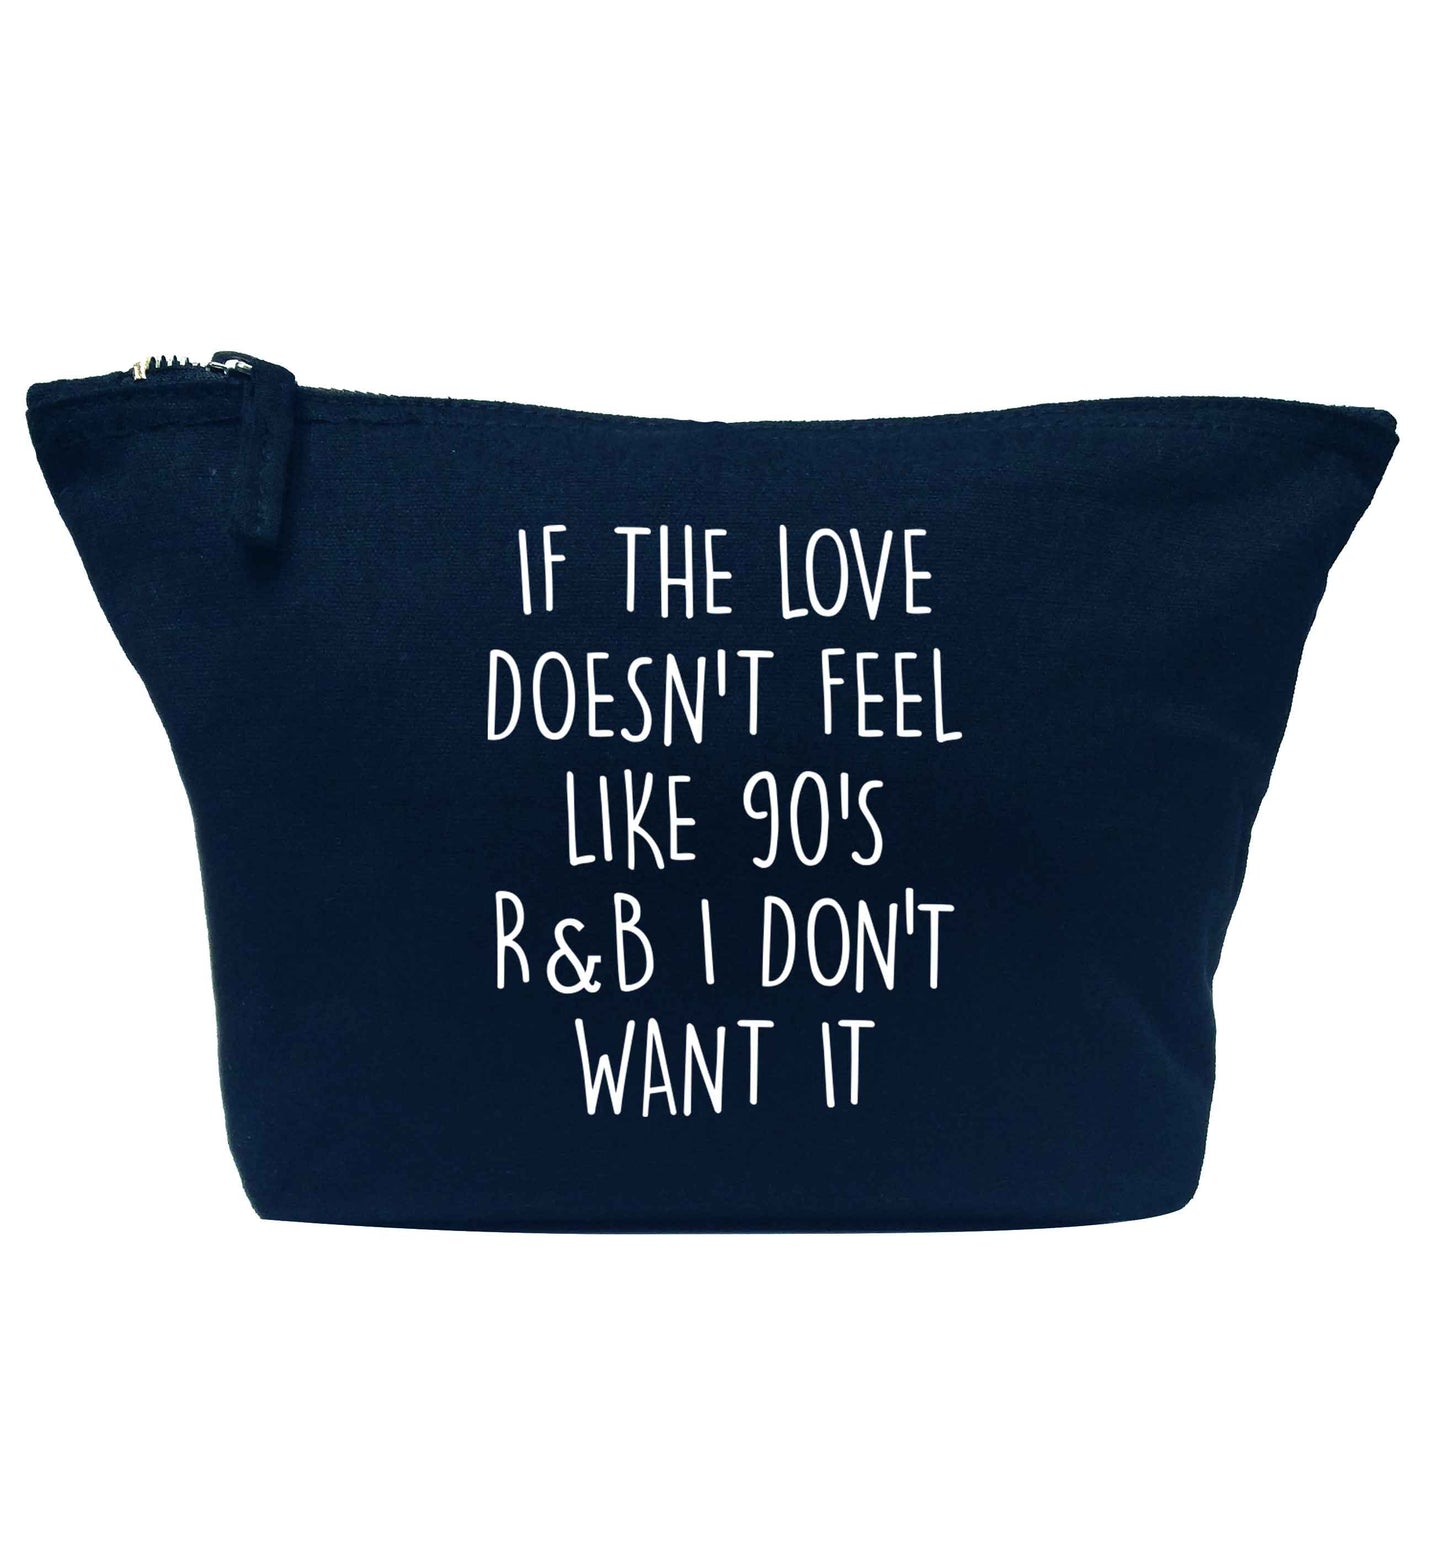 If the love doesn't feel like 90's r&b I don't want it navy makeup bag